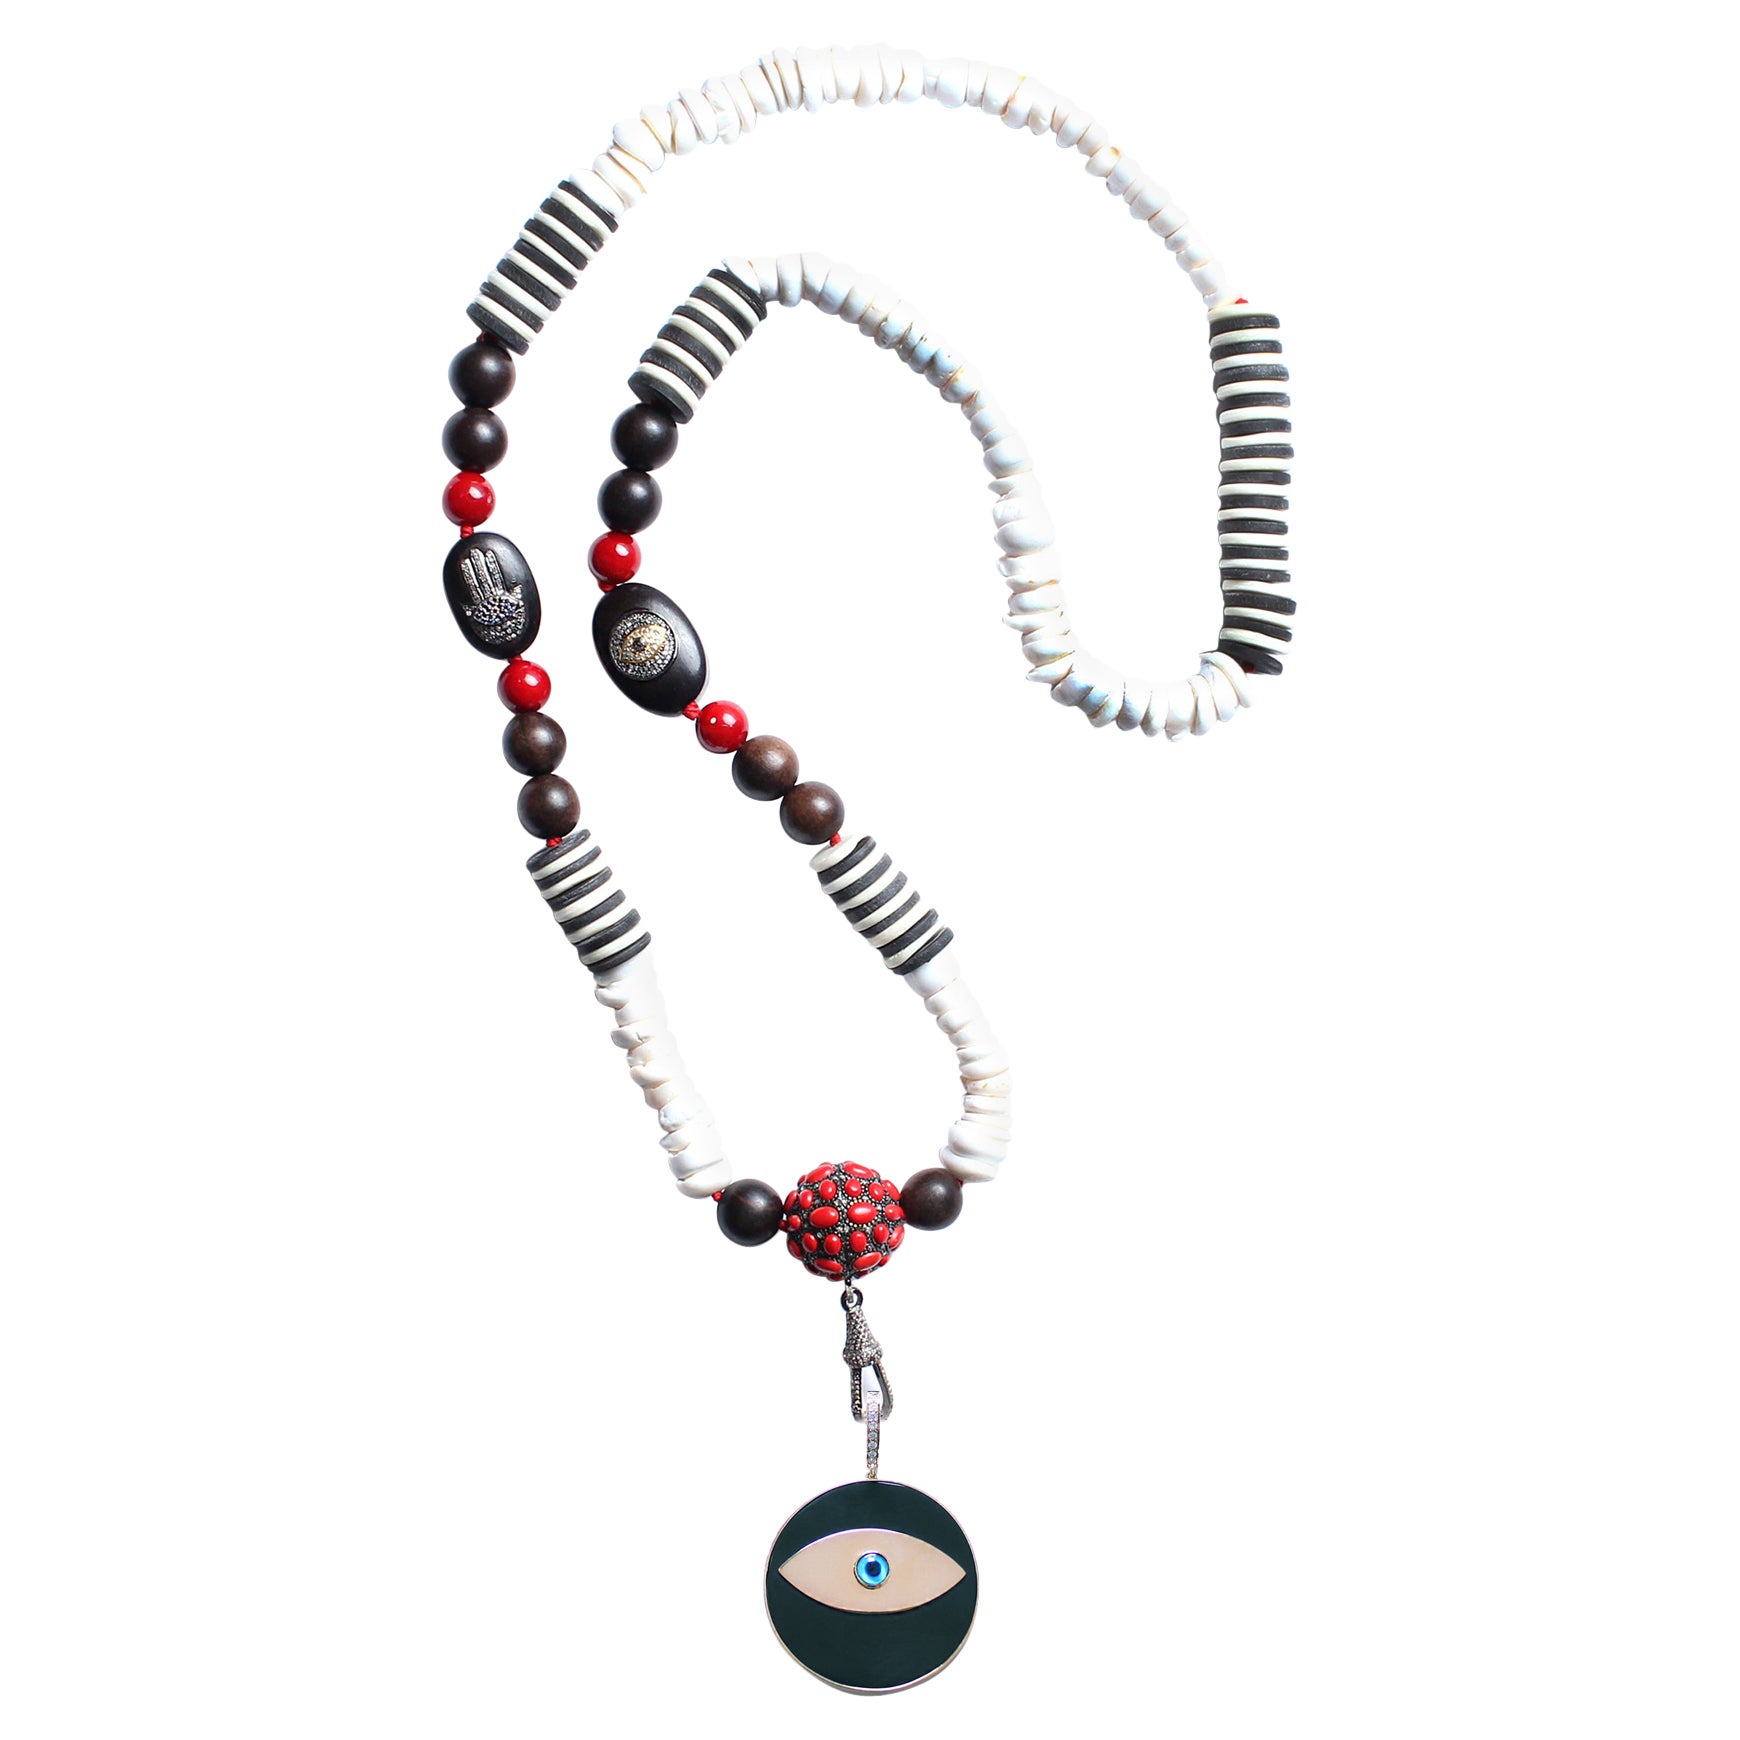 ClariSSA BRONFMAN, collier à pendentif œil maléfique en ébène, saphirs et perles d'ébène